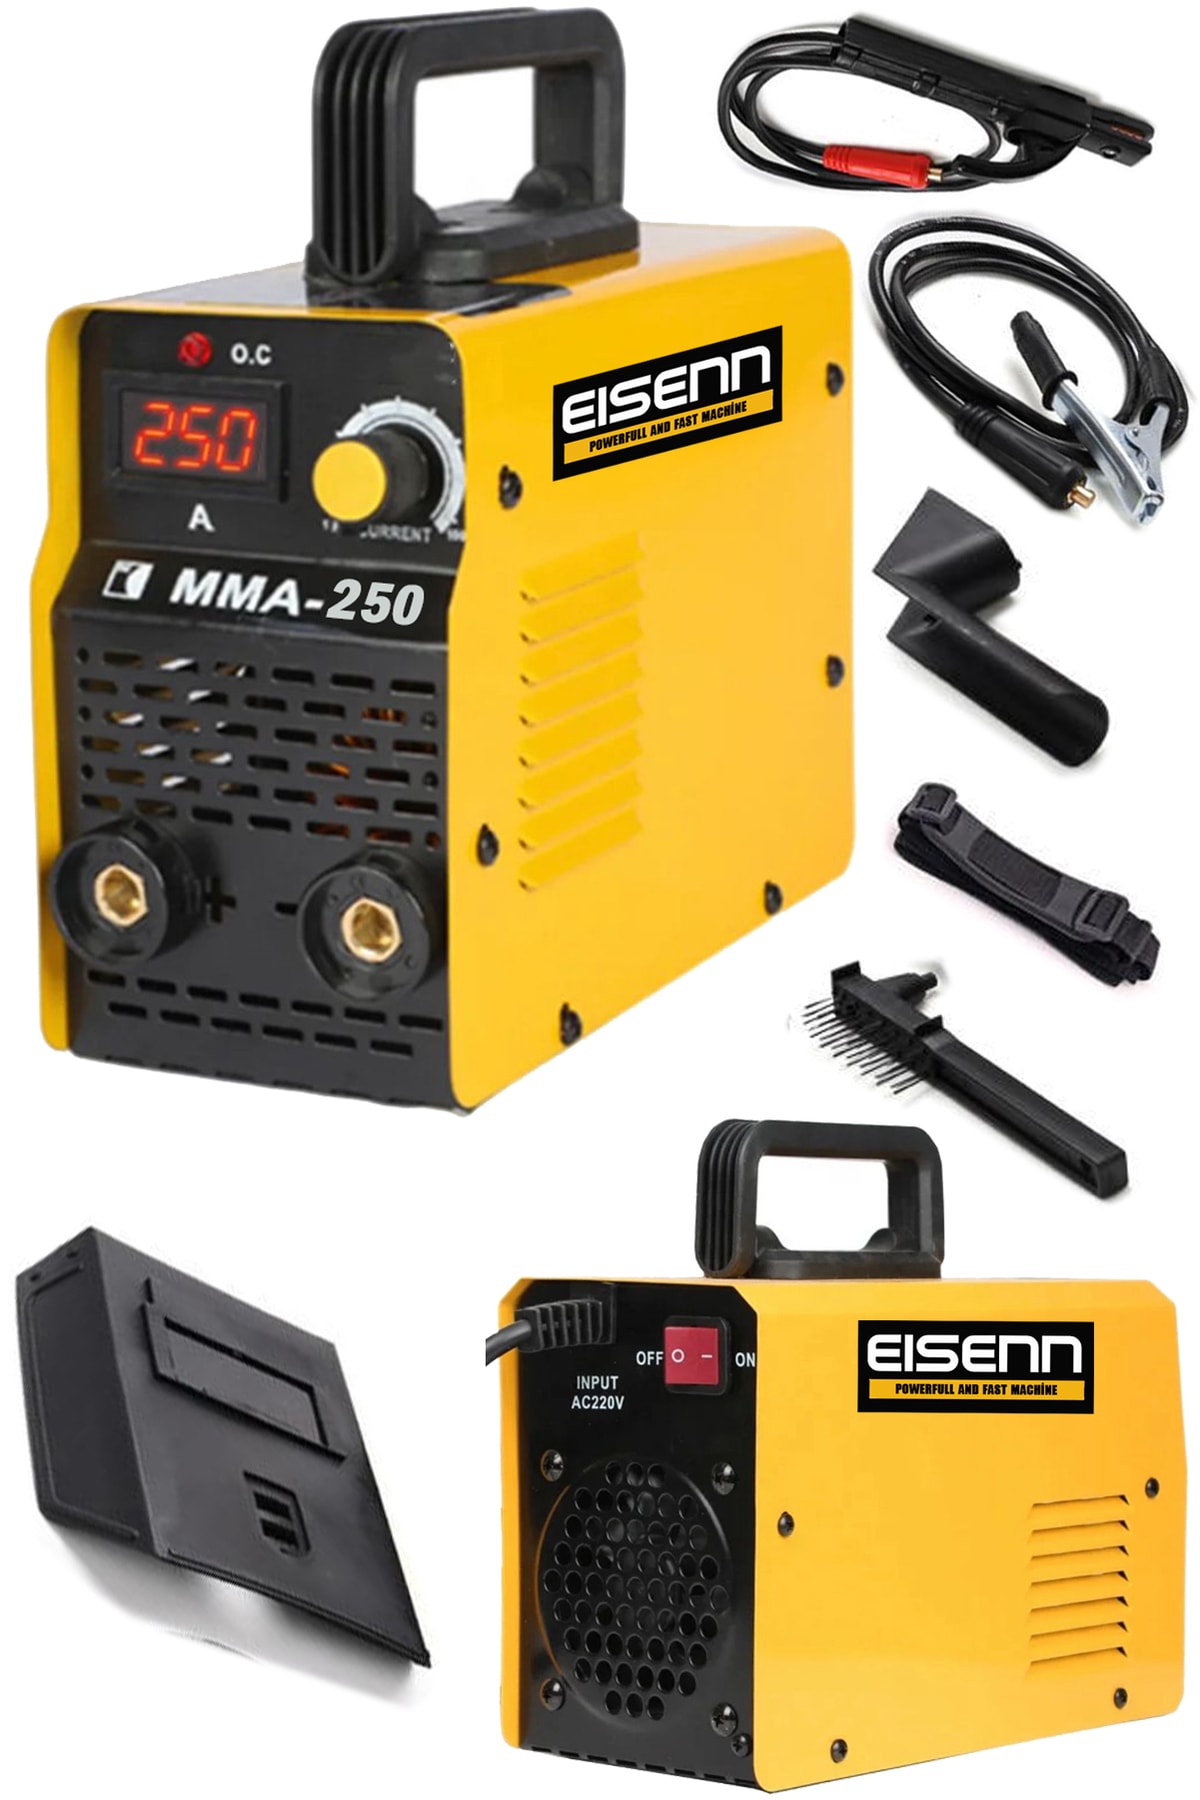 Eisenn Germany Technology Super Ultrasonıc 201 Amp Dijital Göstergeli Invertör Kaynak Makinası